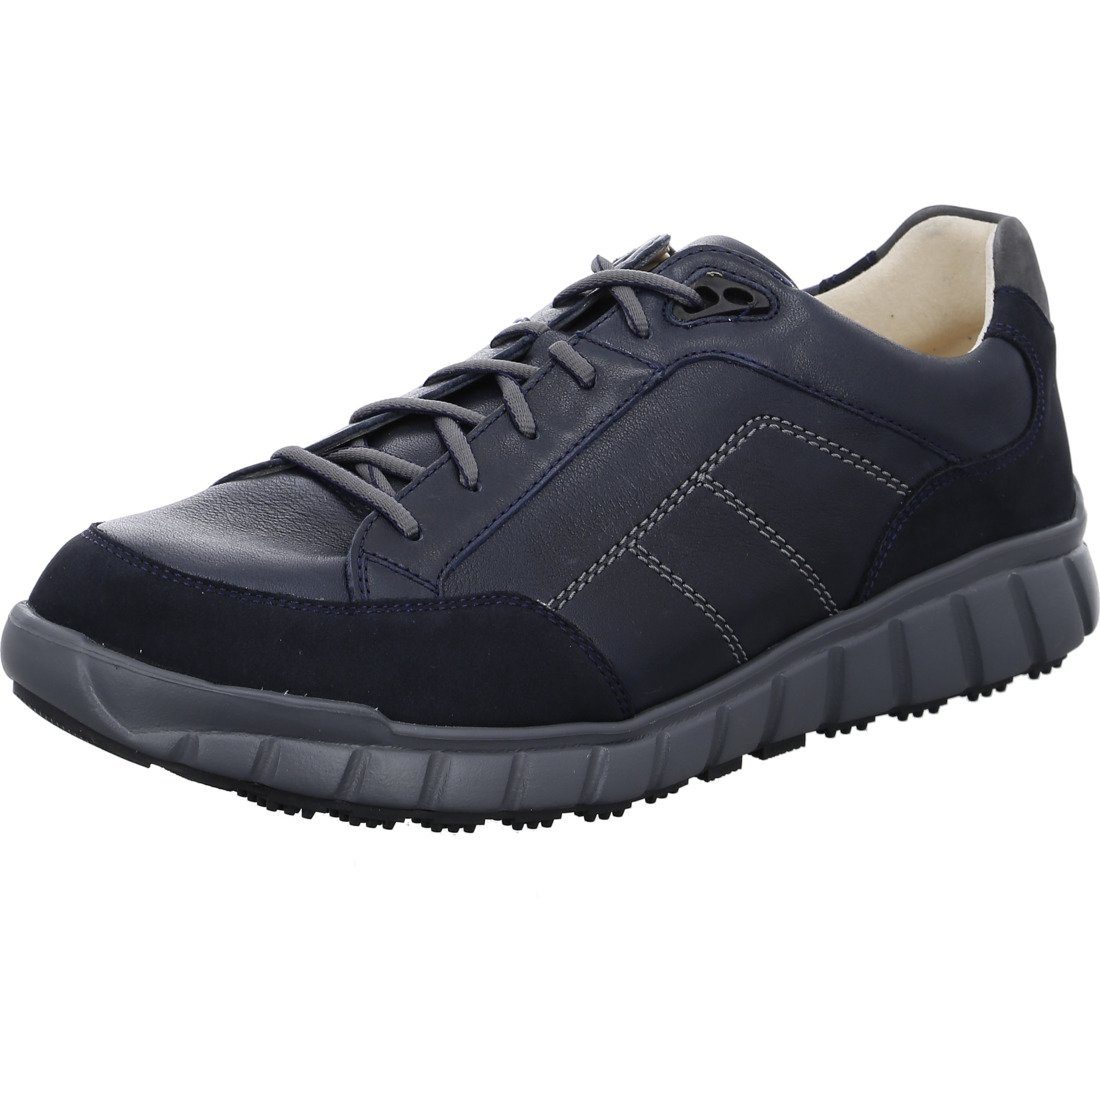 [Verkauf zum begrenzten Preis] Ganter Ganter Schuhe, Schnürschuh Evo - blau 050362 Leder Herren Schnürschuh